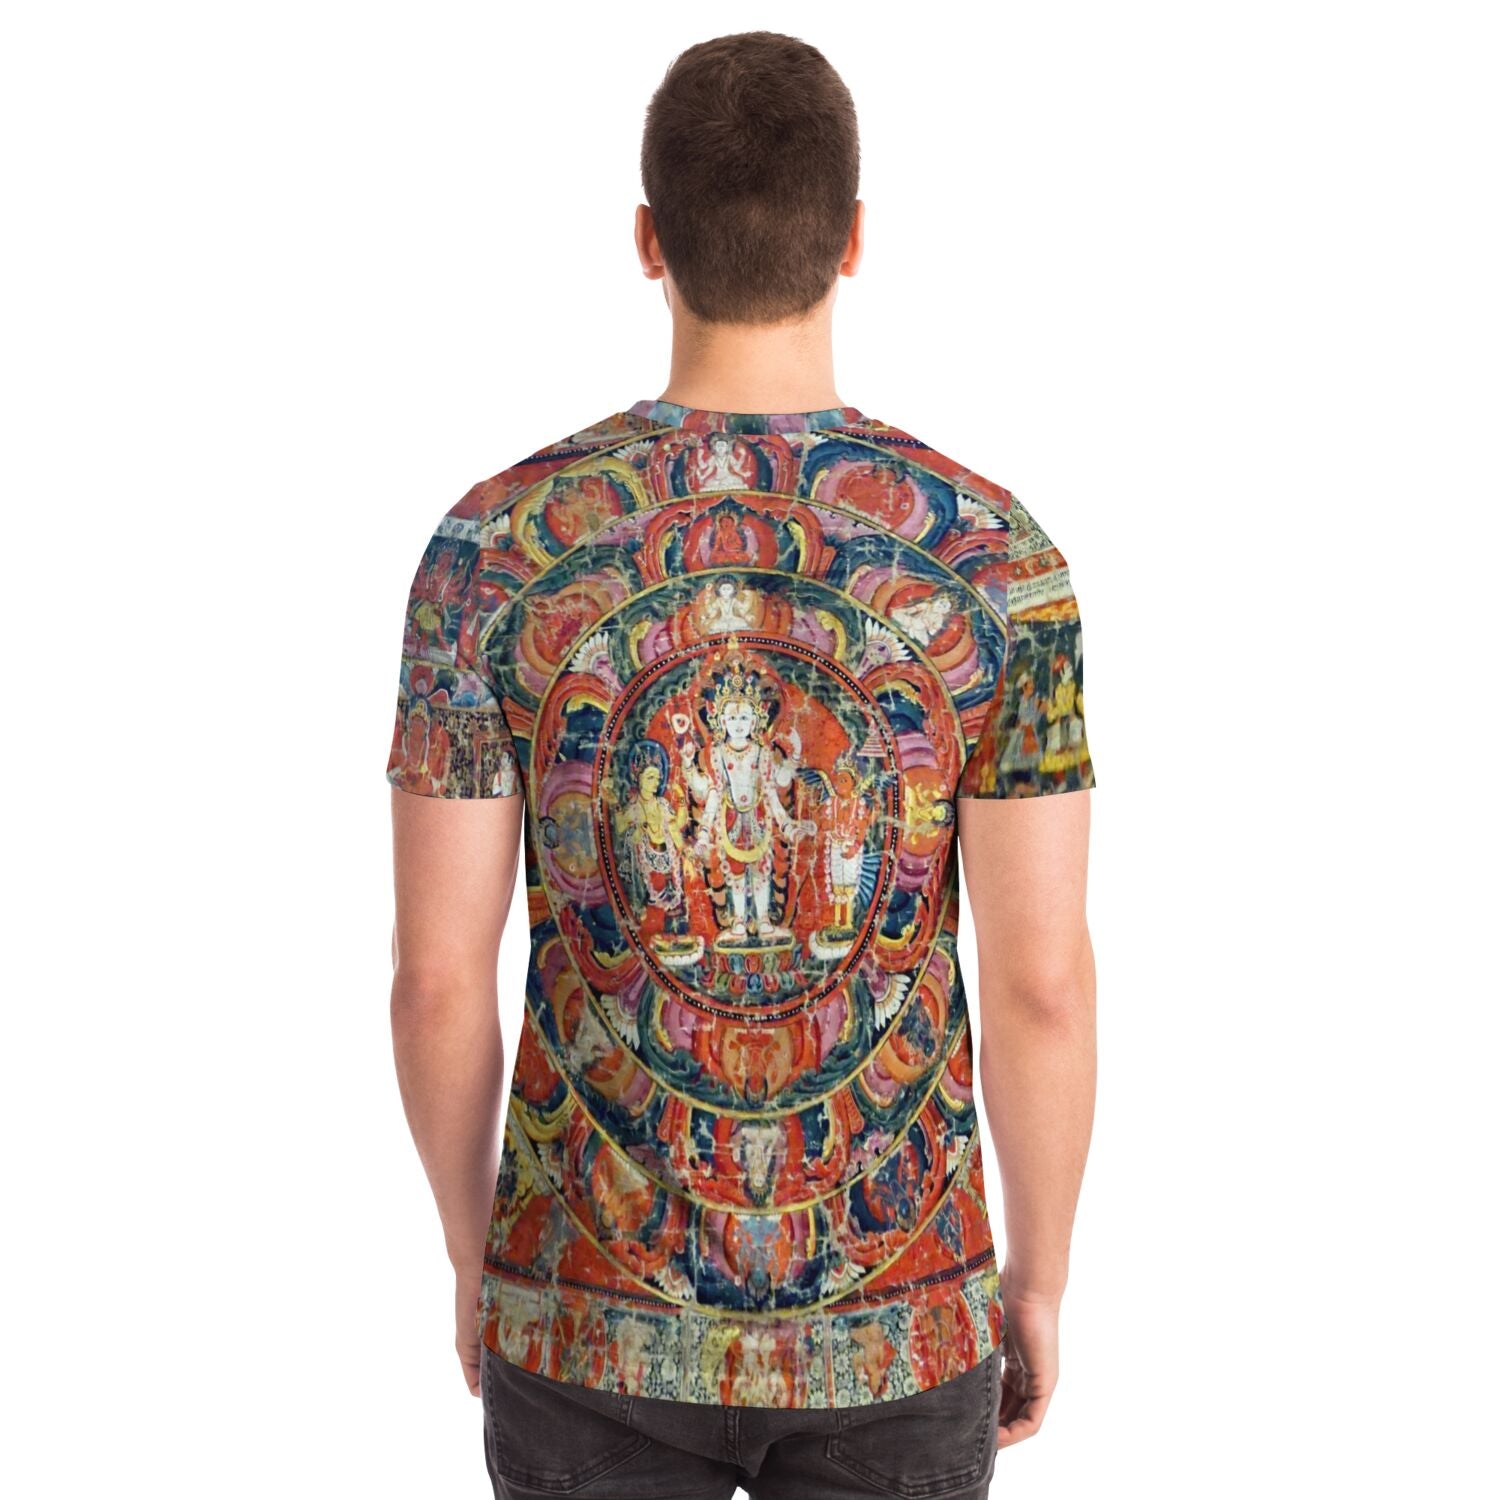 Indra and Garuda Nepali Buddhist Mandala Thangka | Buddhist and Hindu Deity | Nature & Wisdom Mythology Graphic Art T-Shirt - Sacred Surreal